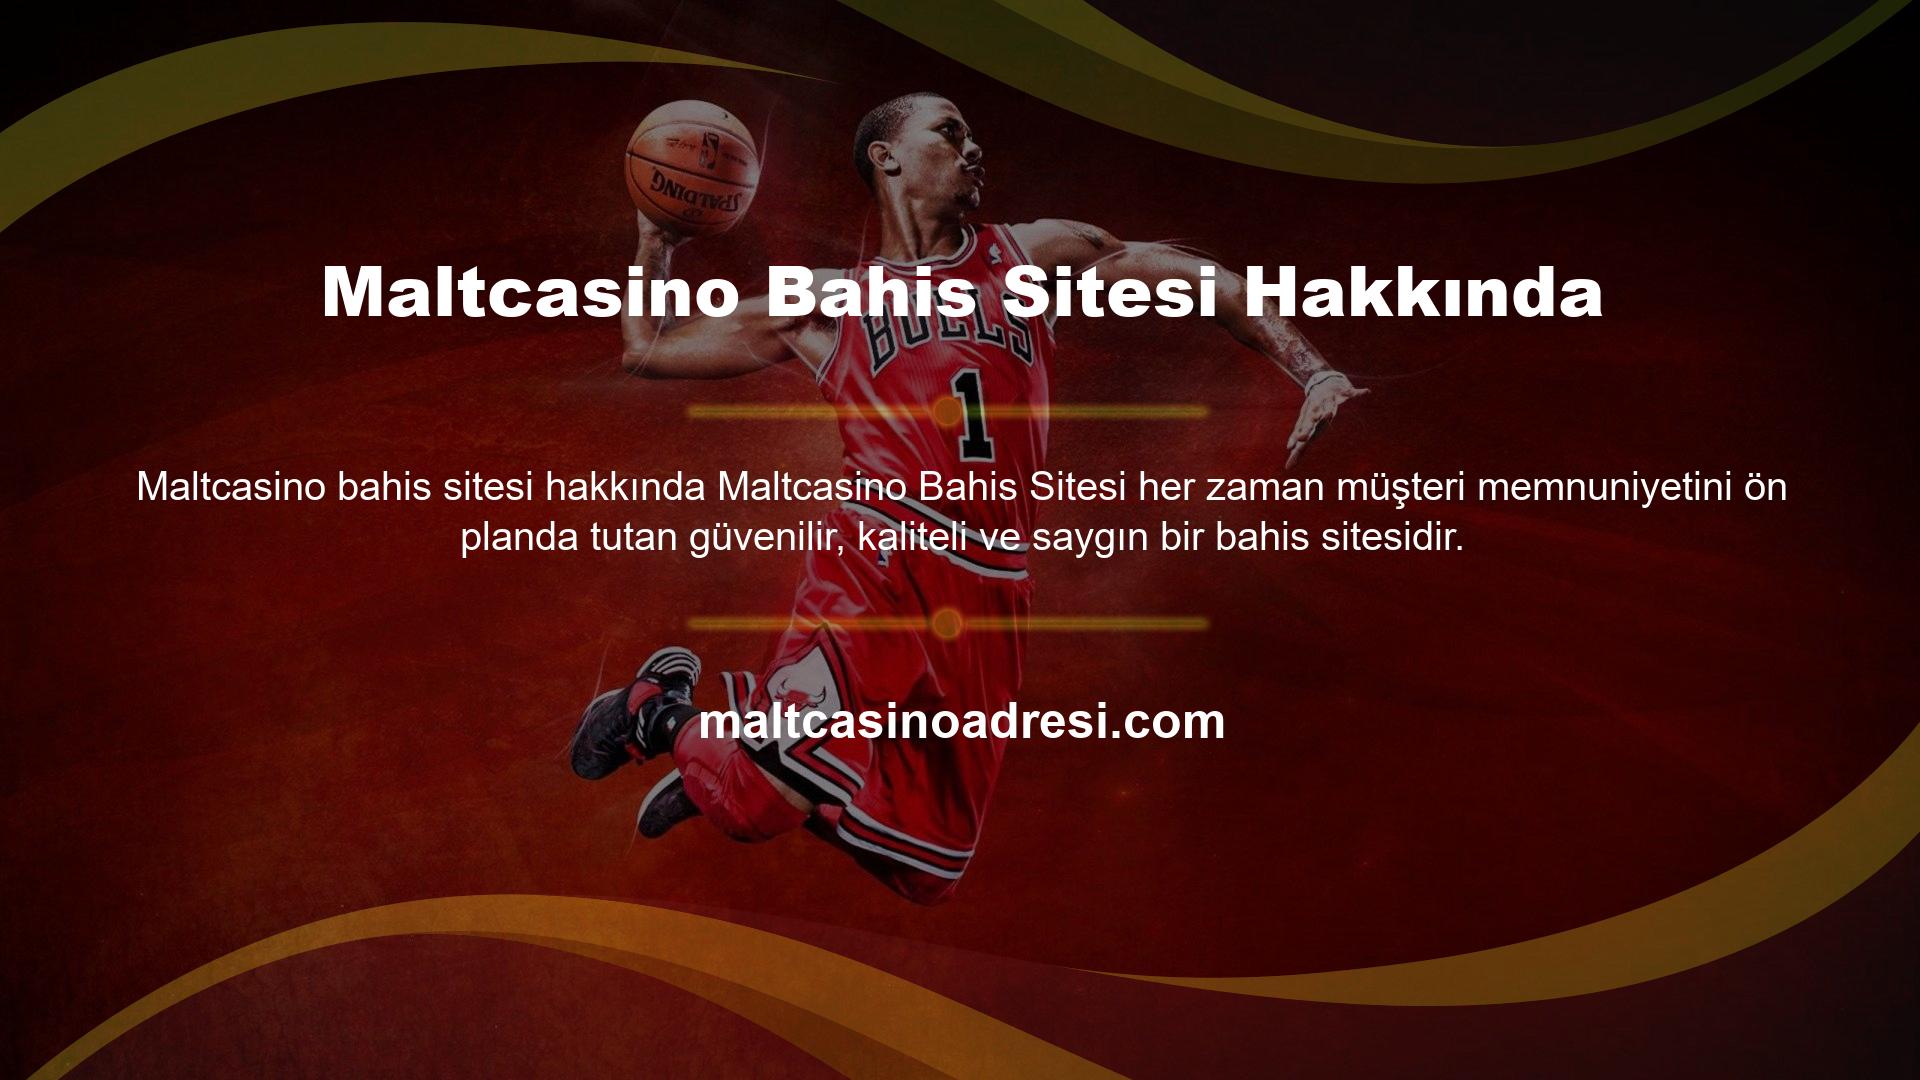 Türk yasadışı casino sitelerinin avantajları ve bonus fırsatları, sitenin başlangıcından bu yana binlerce memnun oyuncuyu kendine çekmiştir